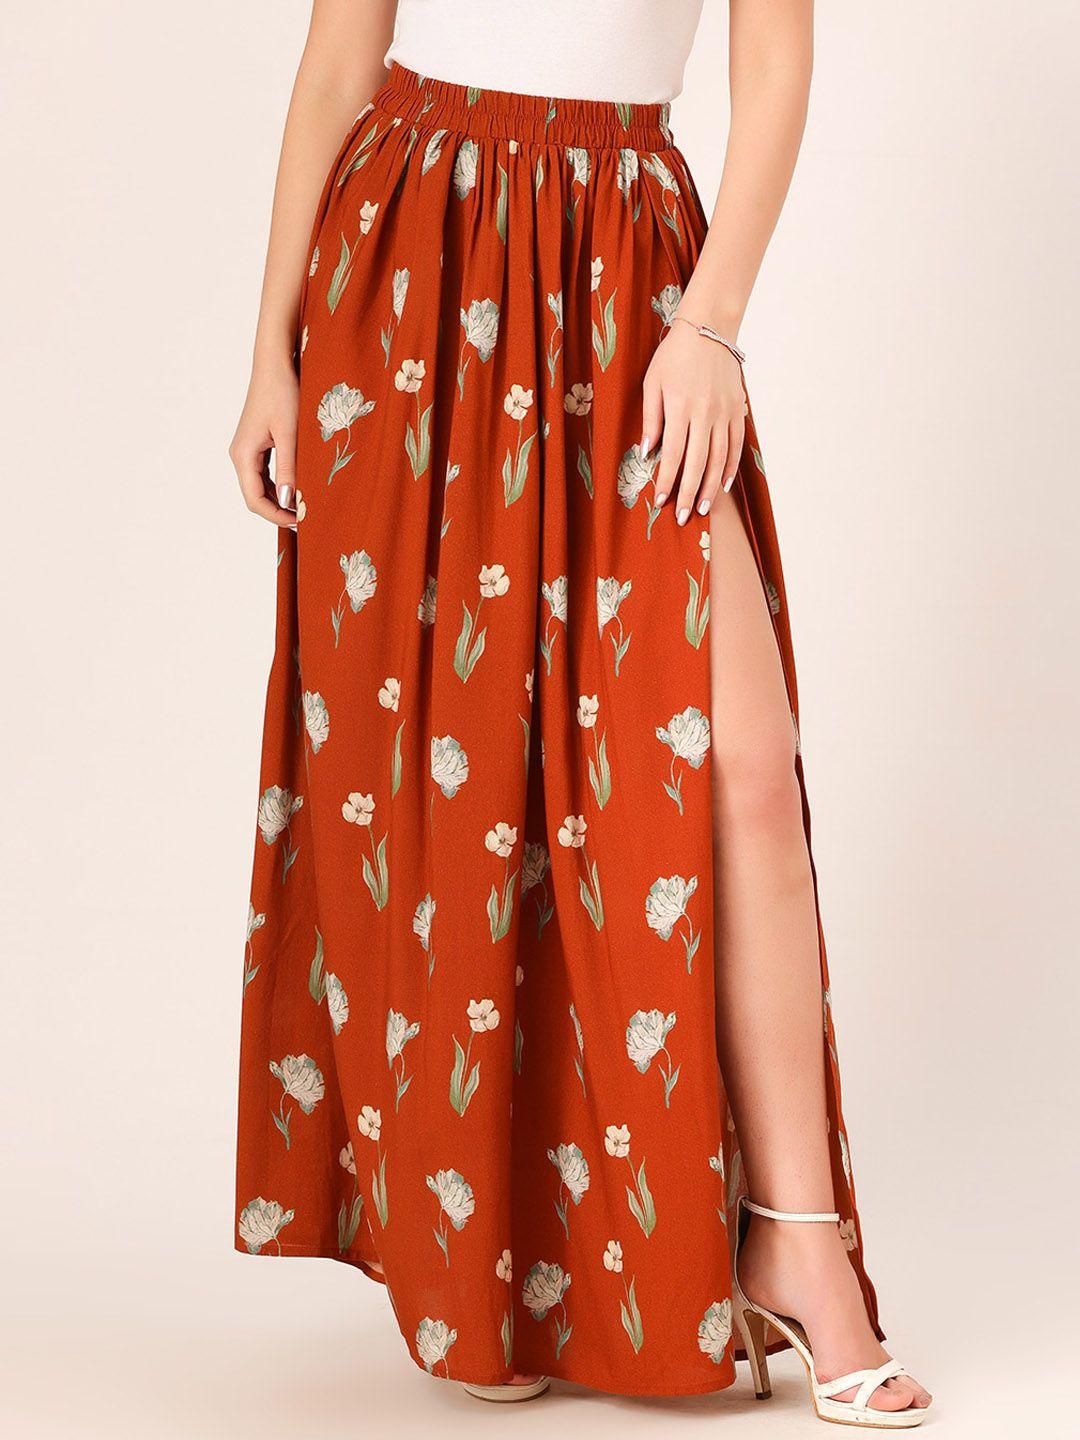 dressberry floral printed side slit flared long skirt